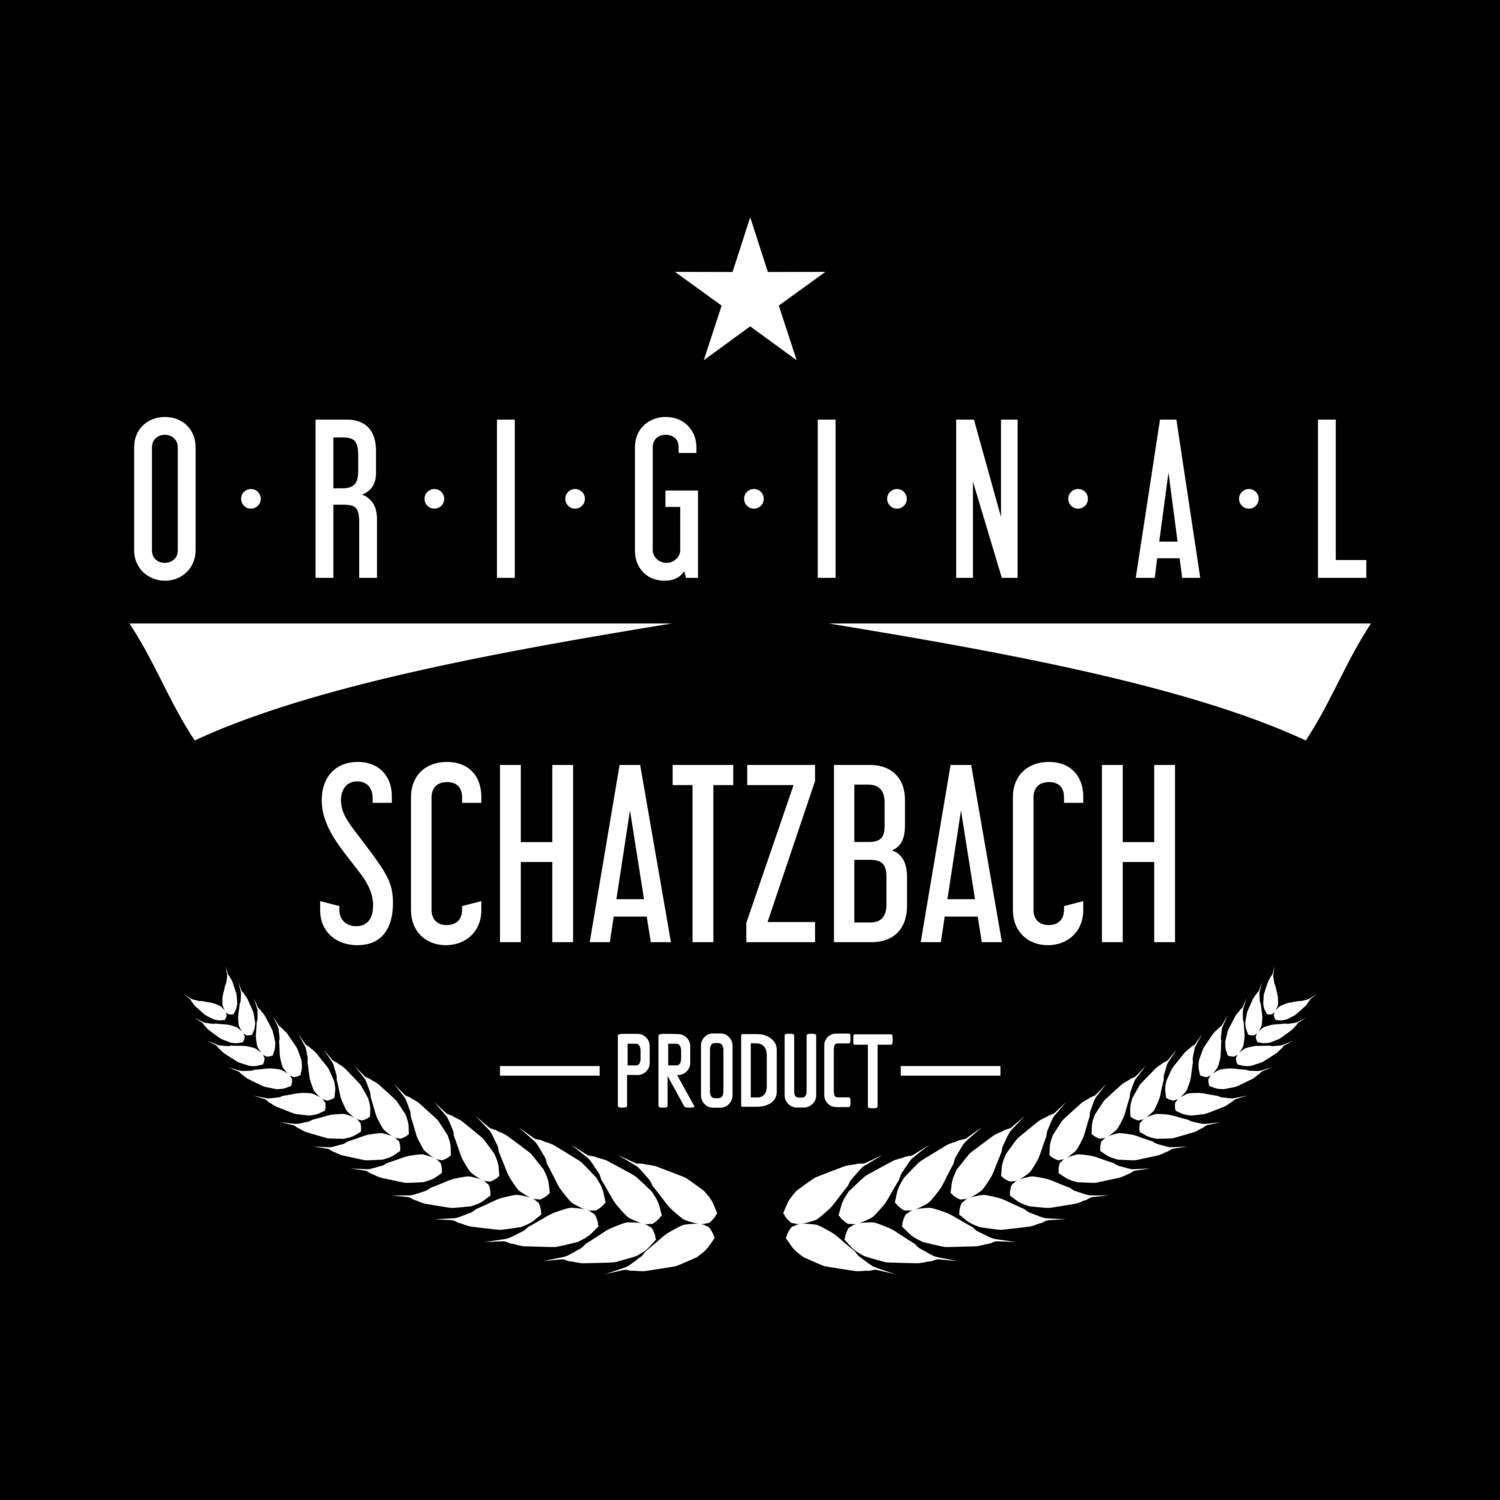 Schatzbach T-Shirt »Original Product«